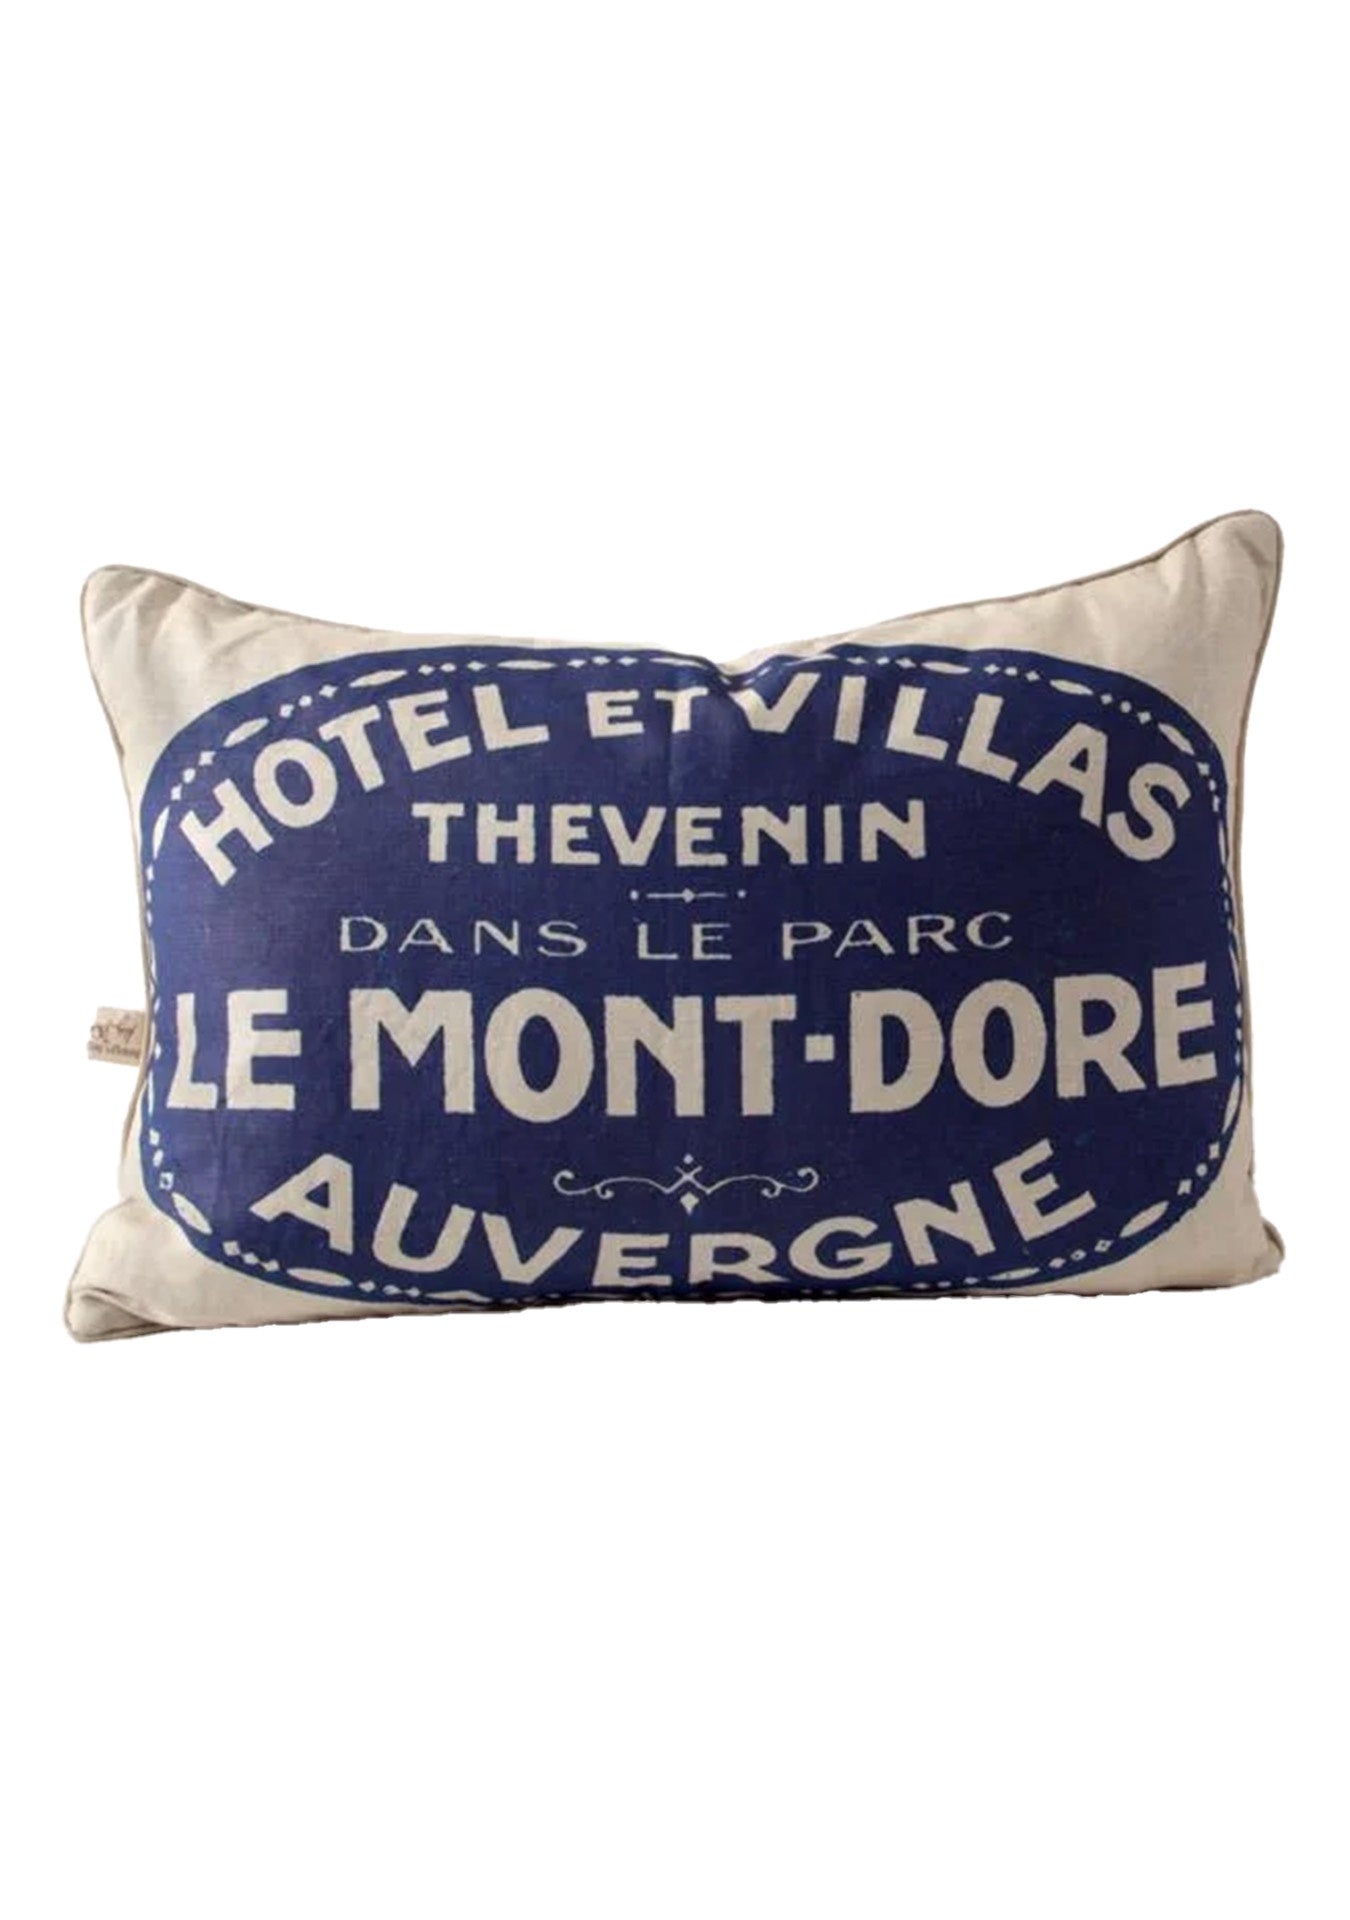 Decorative pillow with blue and white vintage design, featuring text "Hotel et Villas Thevenin Dans Le Parc Le Mont-Dore Auvergne," in a Bungalow style, by Design Legacy's Le Mont-Dore Auvergne Pillow 17x24.